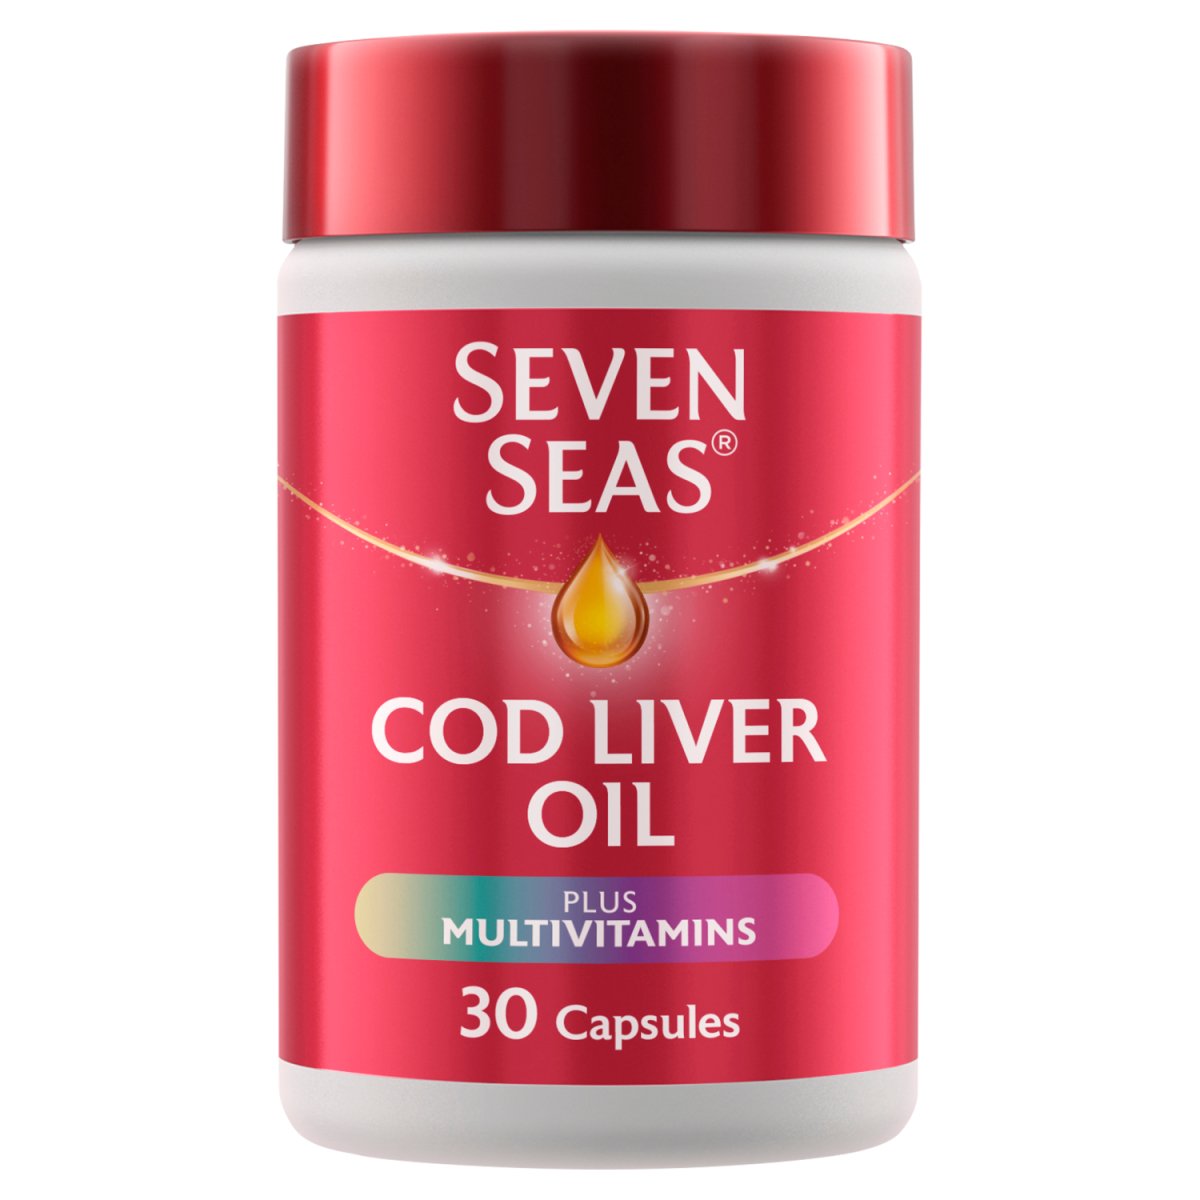 Seven Seas Cod Liver Oil Plus Multivitamins Capsules - Intamarque - Wholesale 5012335792005